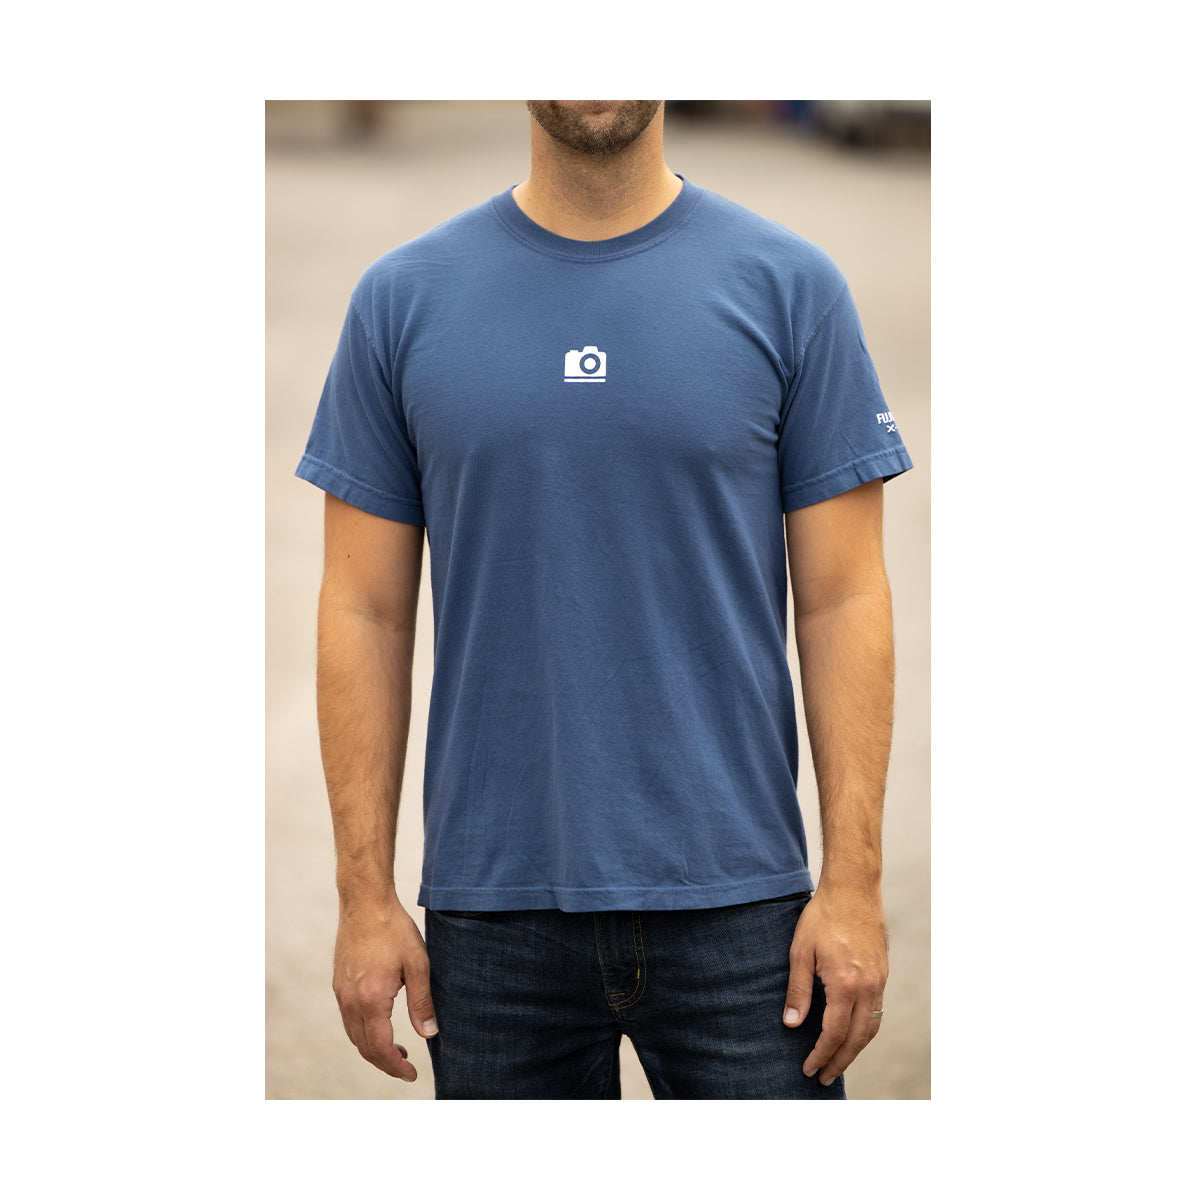 pictureline Apparel: Spring 2020 Short Sleeve Shirt Large (Blue)